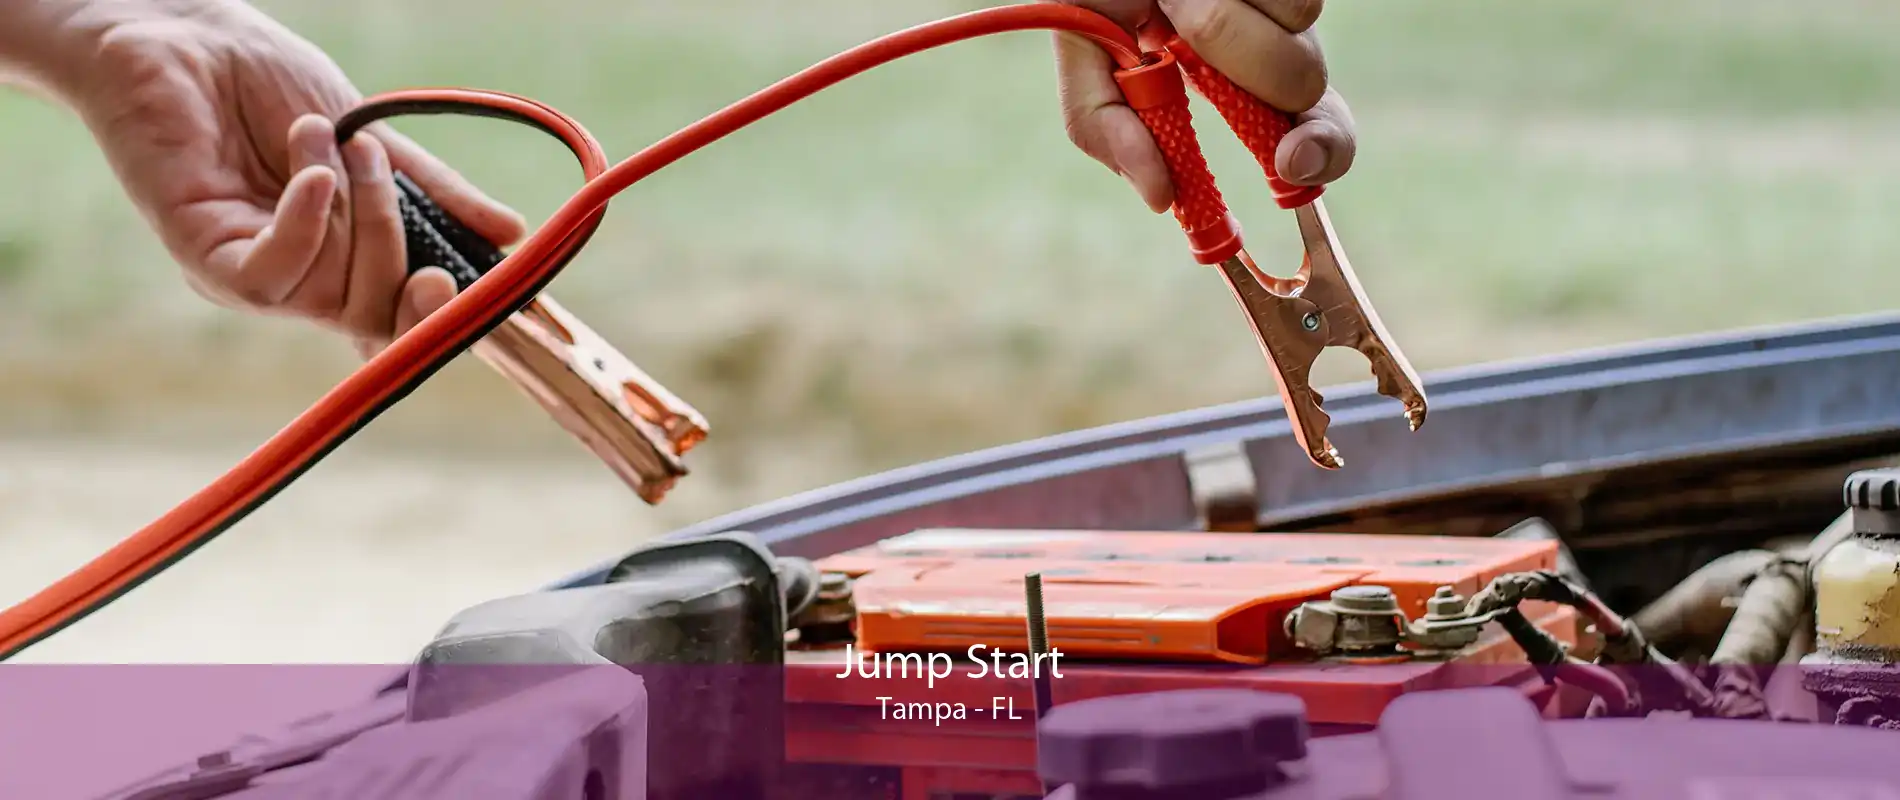 Jump Start Tampa - FL